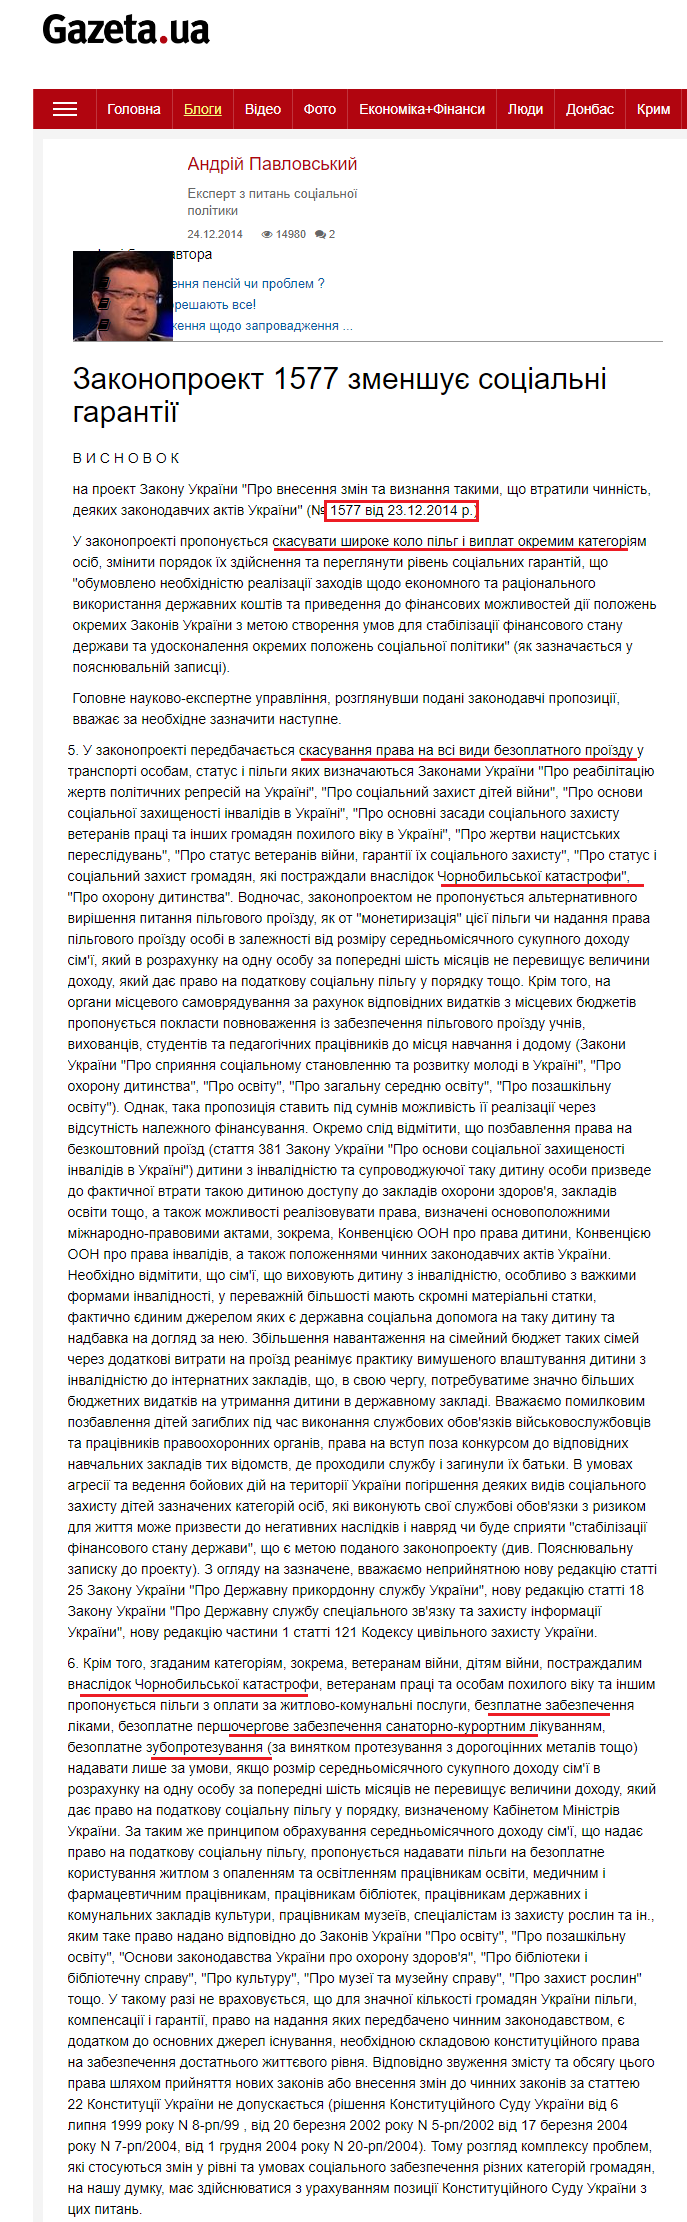 https://gazeta.ua/blog/46516/zakonoproekt-1577-zmenshuye-socialni-garantiyi